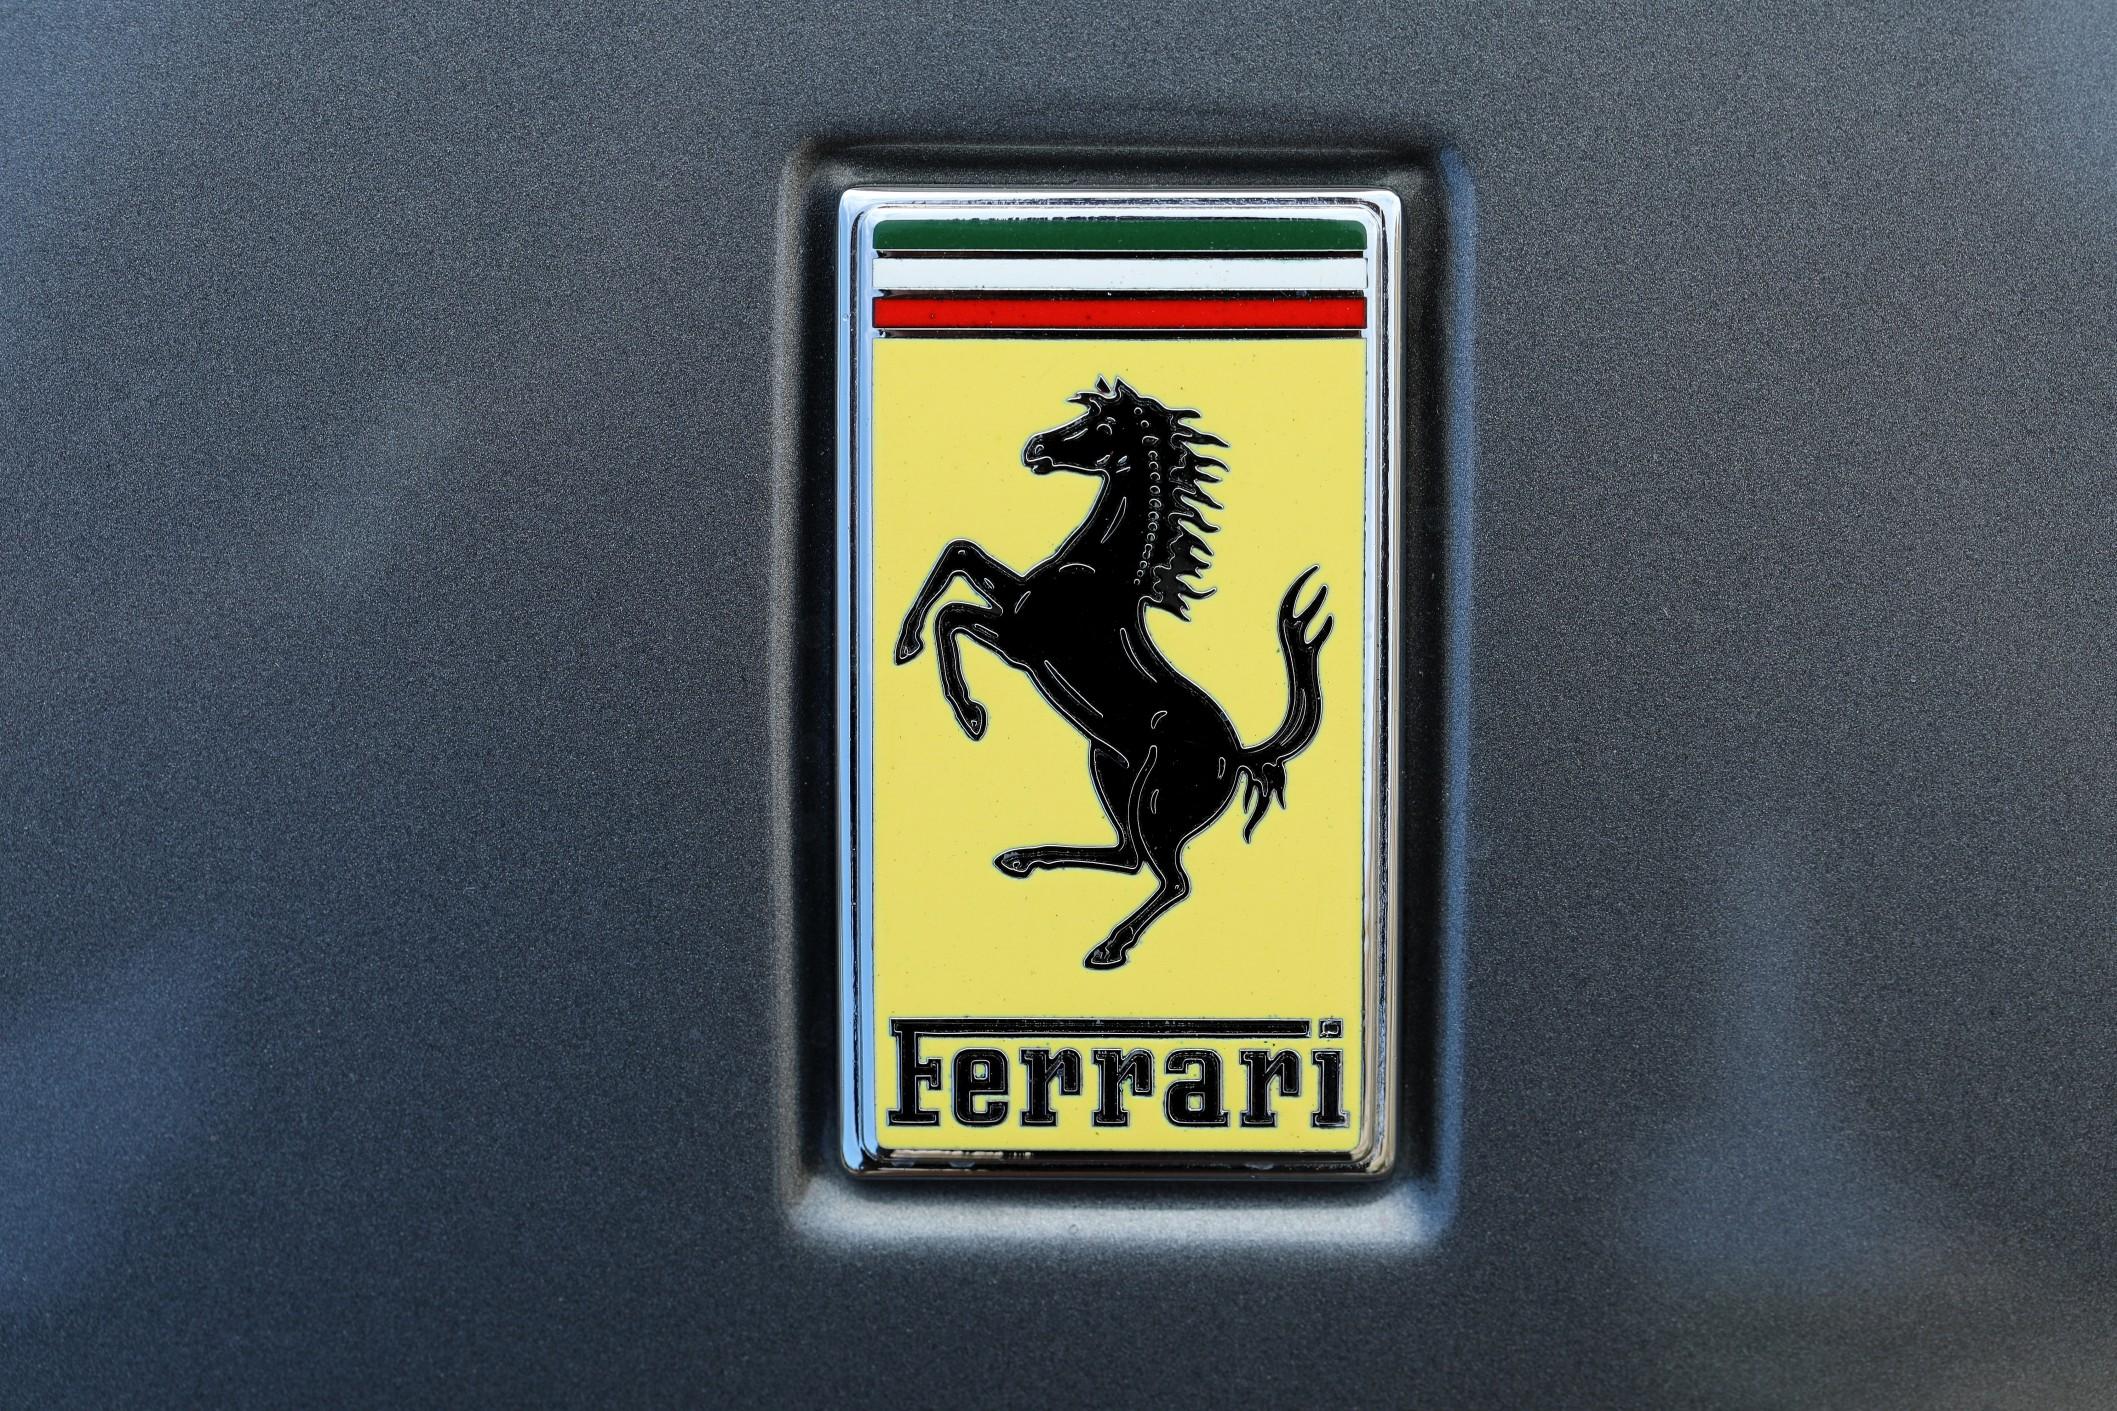 Enzo Ferrari built a supercar empire.